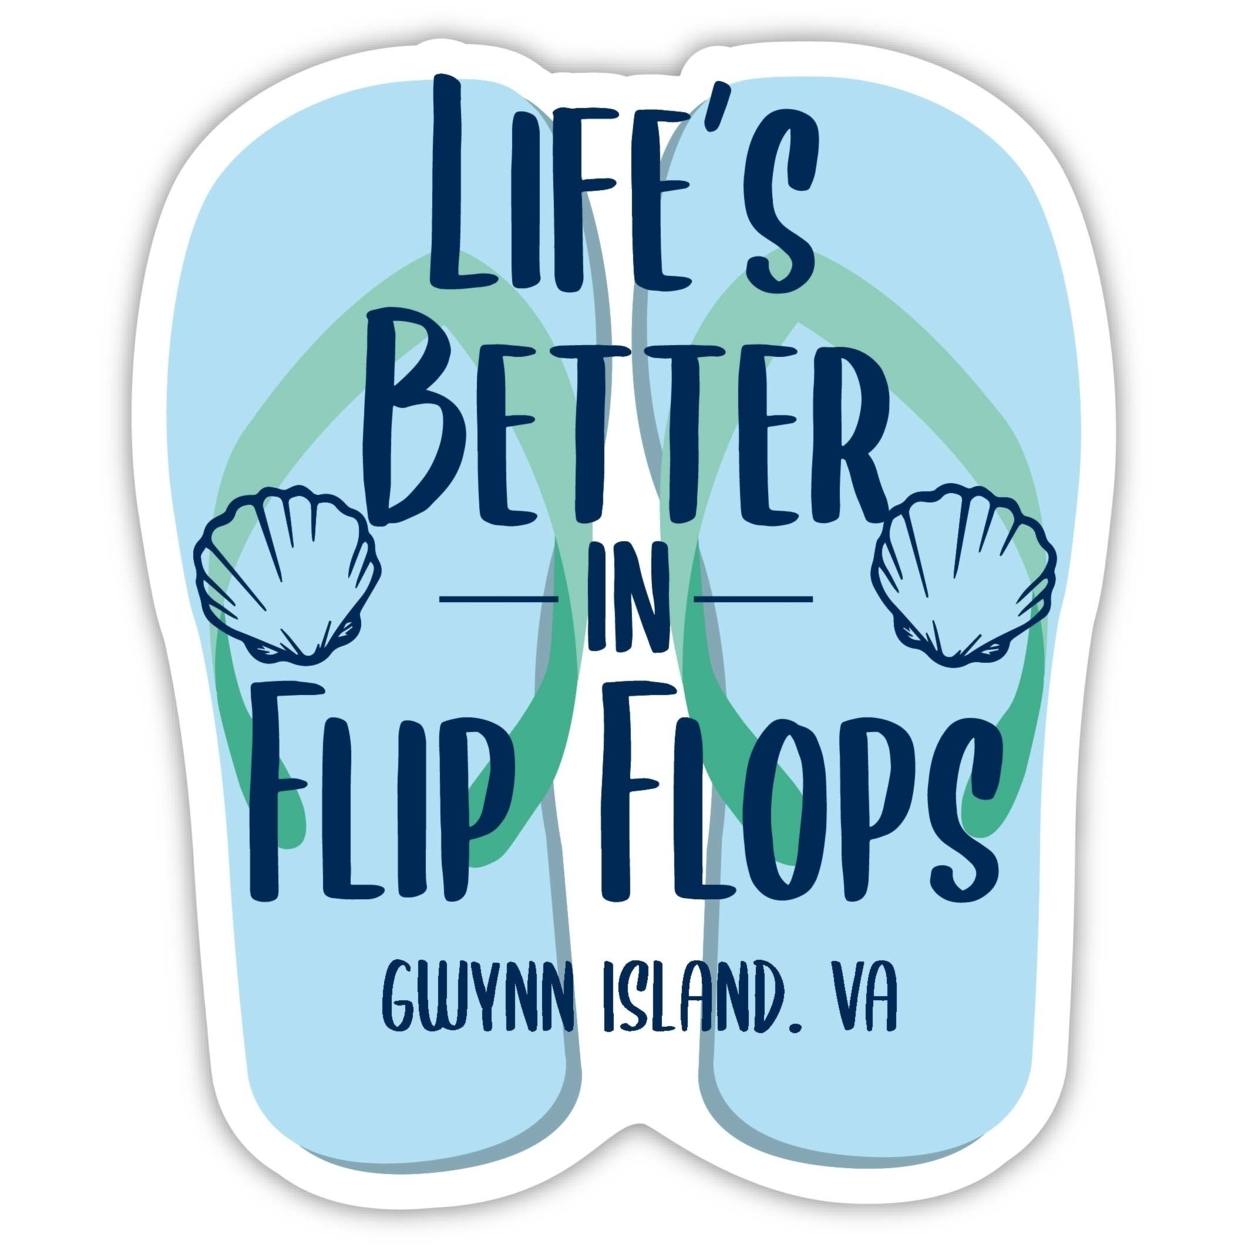 Gwynn Island Virginia Souvenir 4 Inch Vinyl Decal Sticker Flip Flop Design